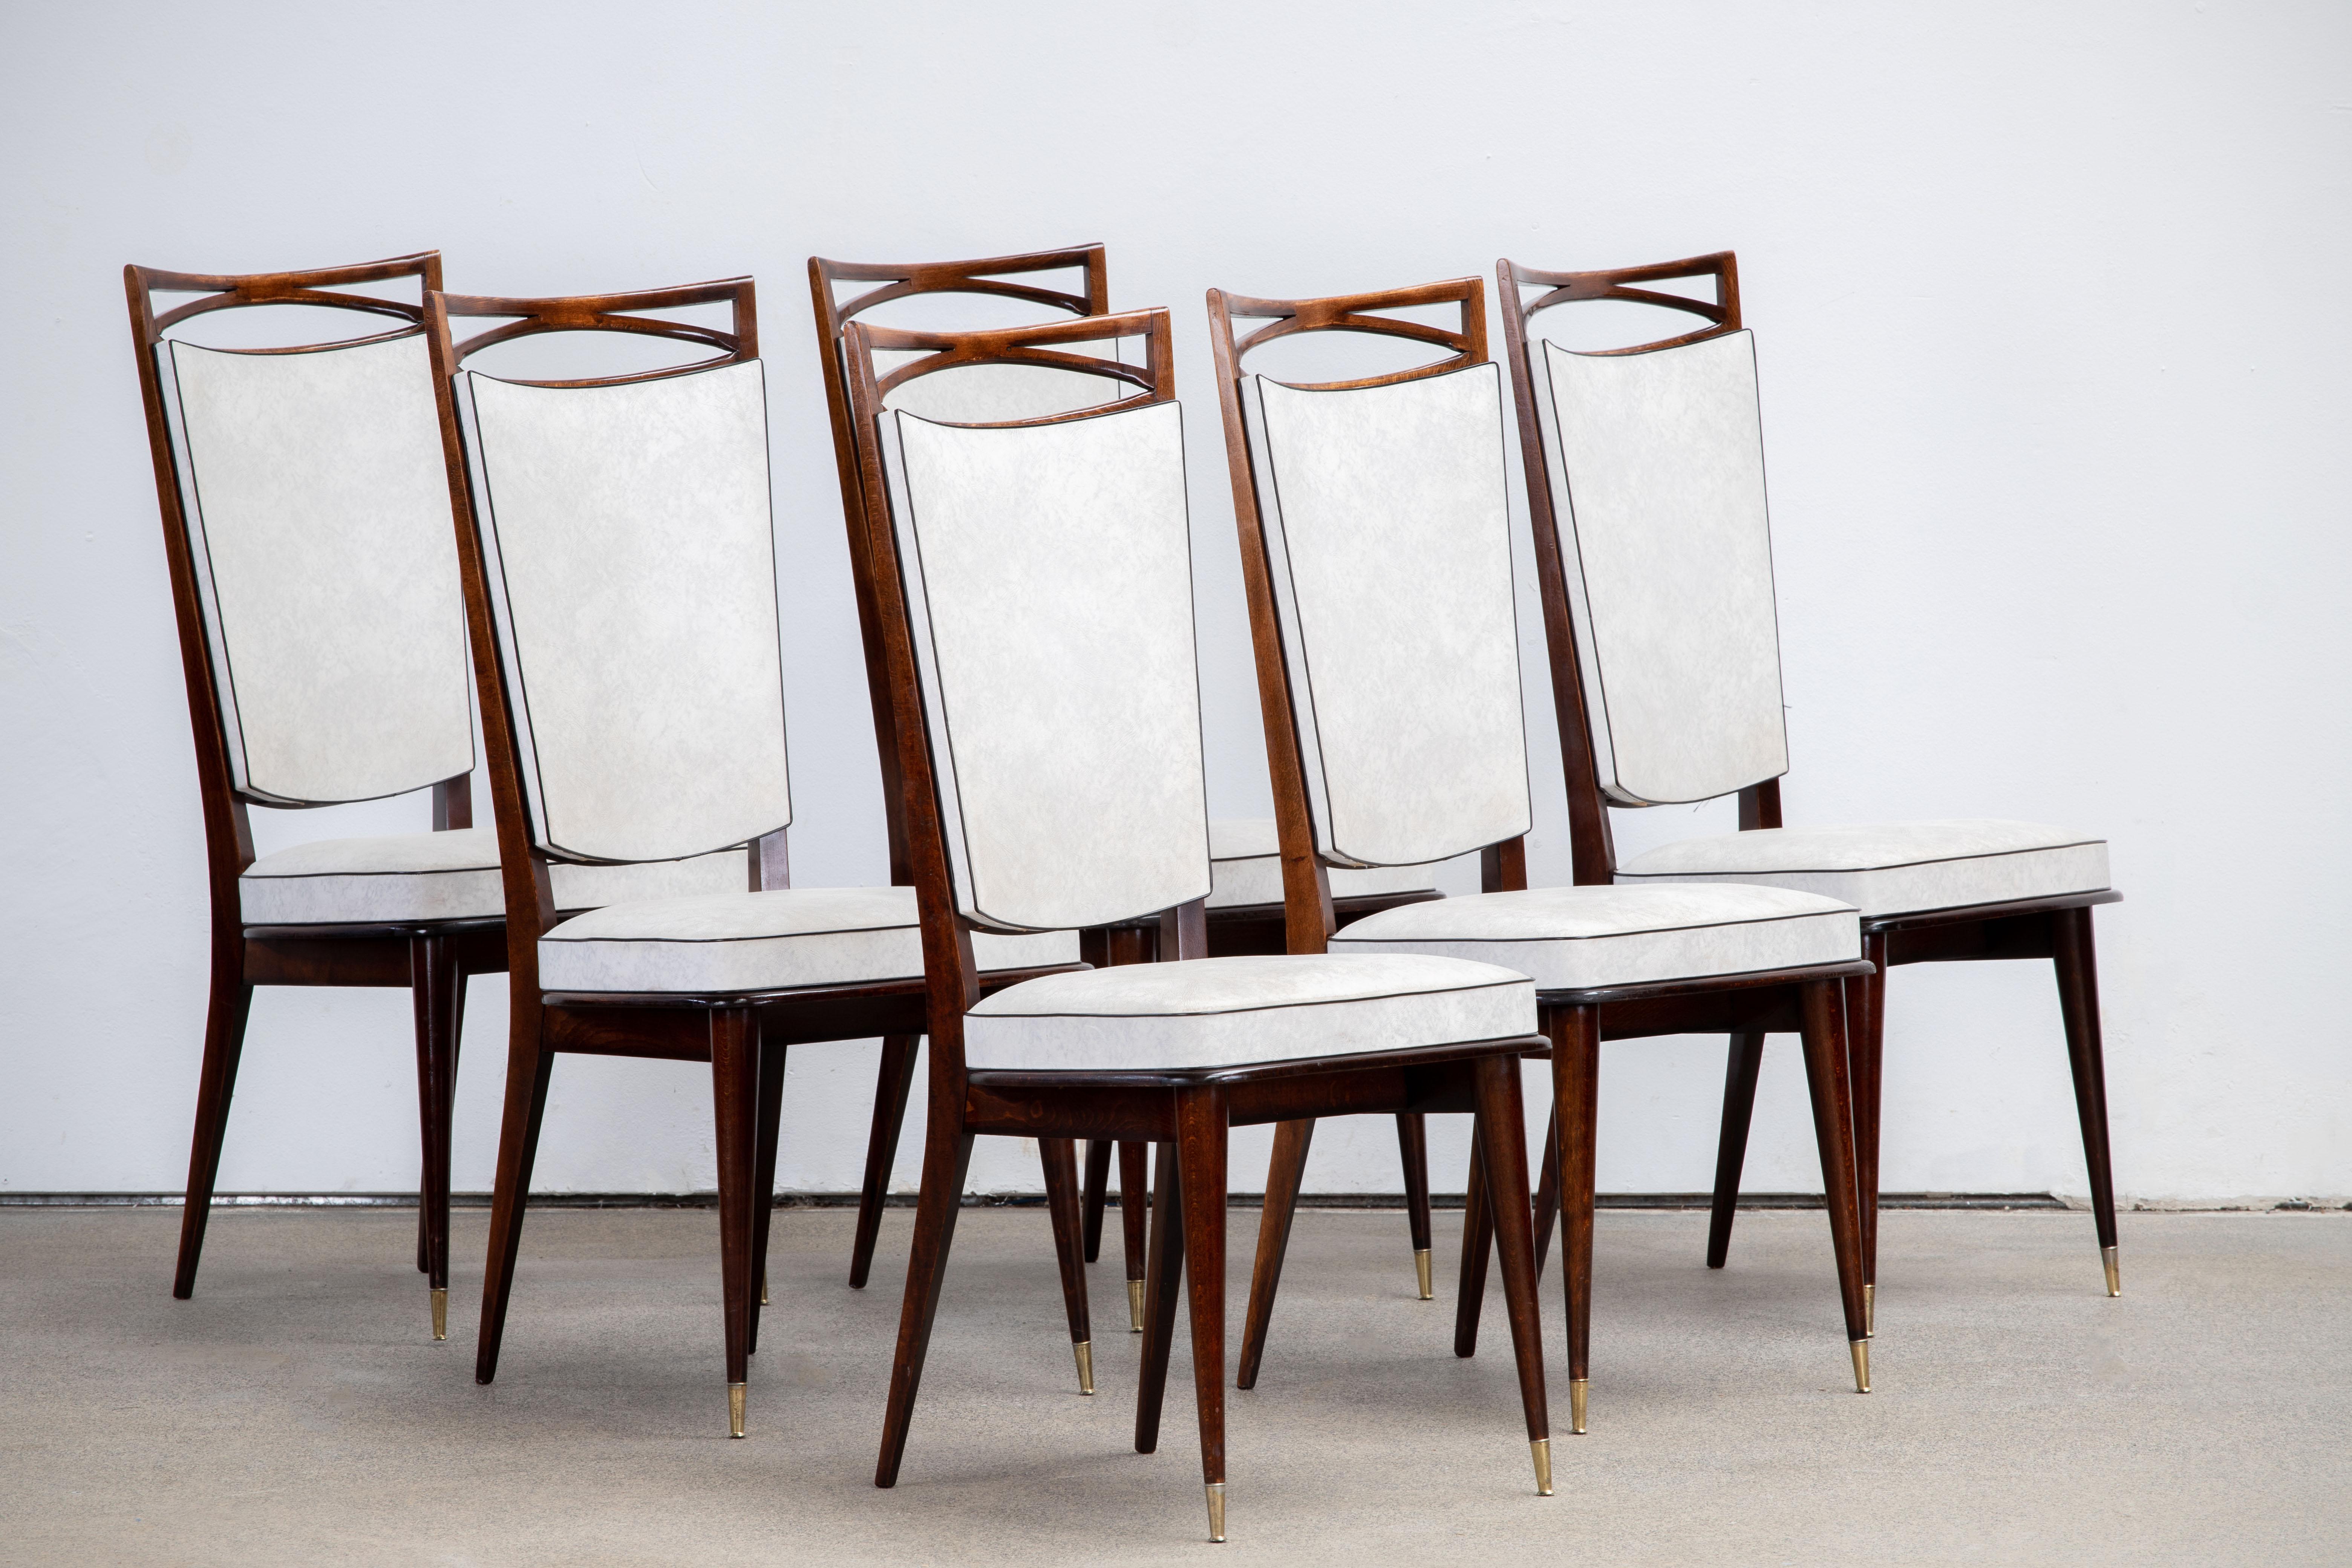 Ensemble de six chaises à haut dossier tapissées et recouvertes de vynil blanc, présentant des éléments de design français traditionnel dans une finition en chêne profond.

Dans le style de René Prou, Albert-Lucien Guenot, Pomone, André Arbus,